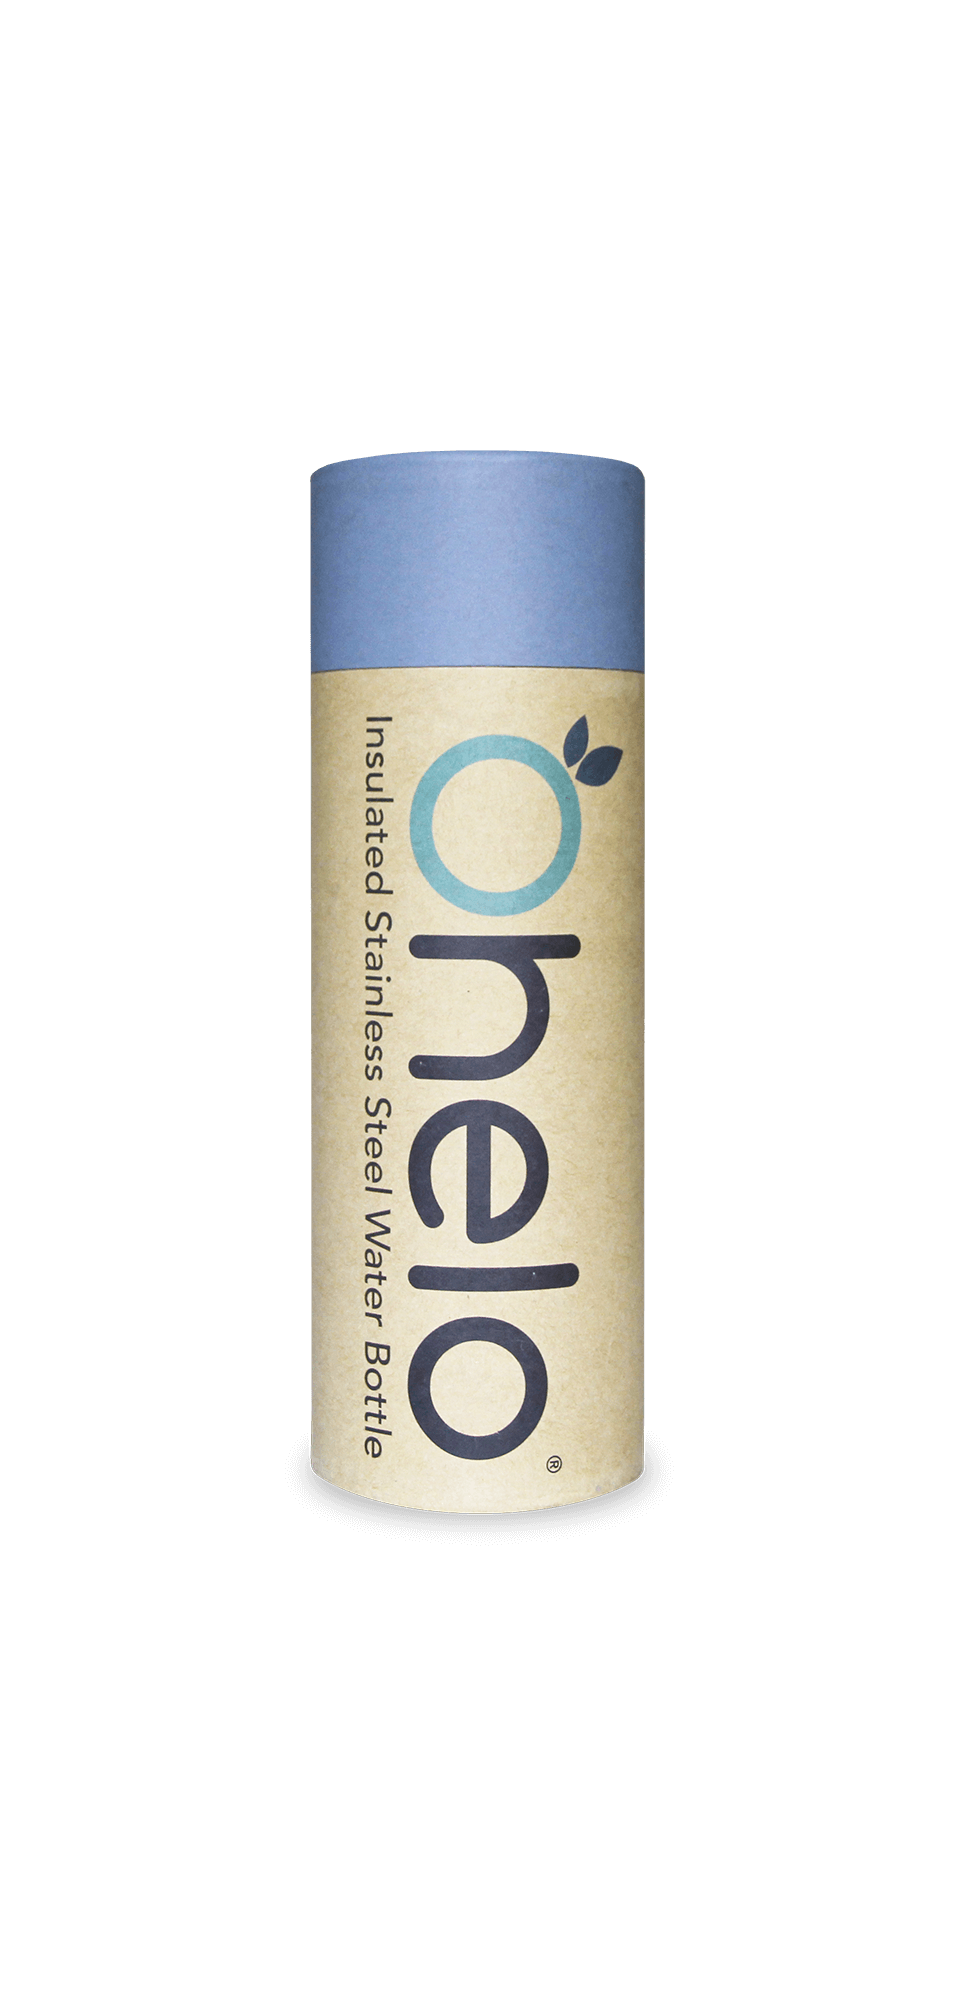 Ohelo blue water bottle box